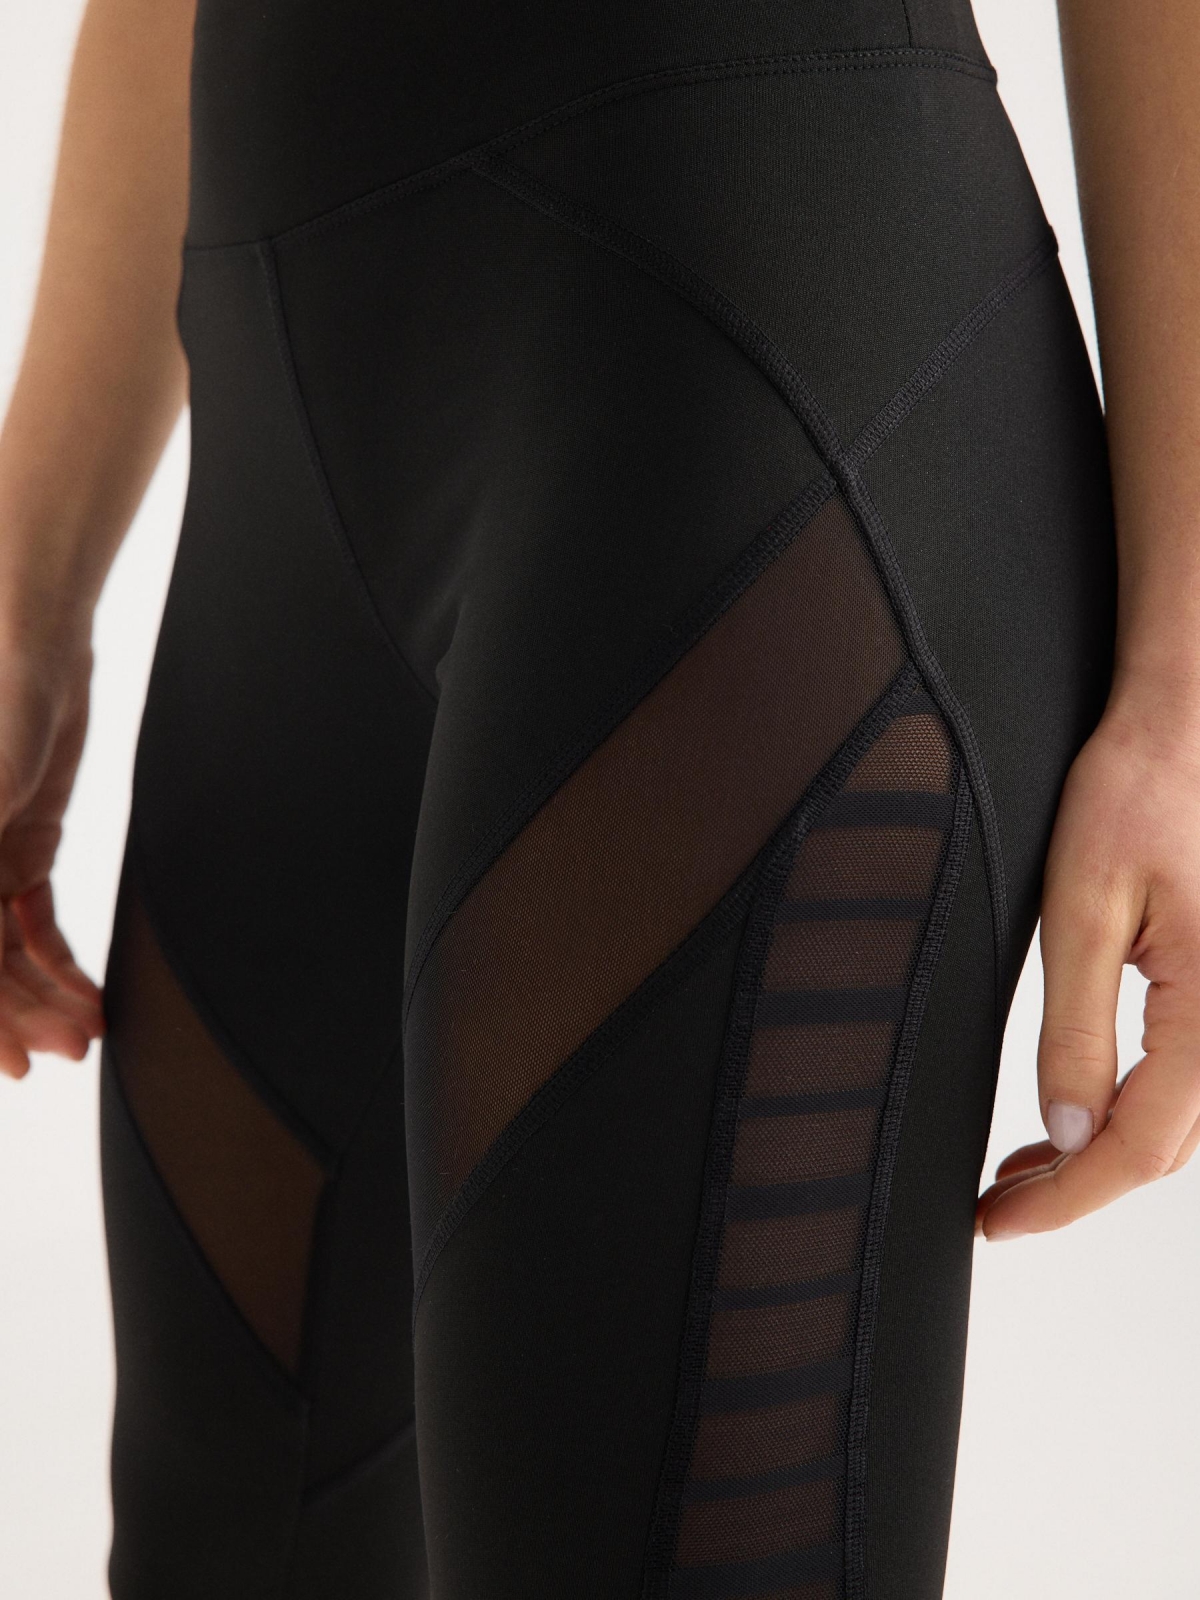 Combined mesh block leggings black detail view